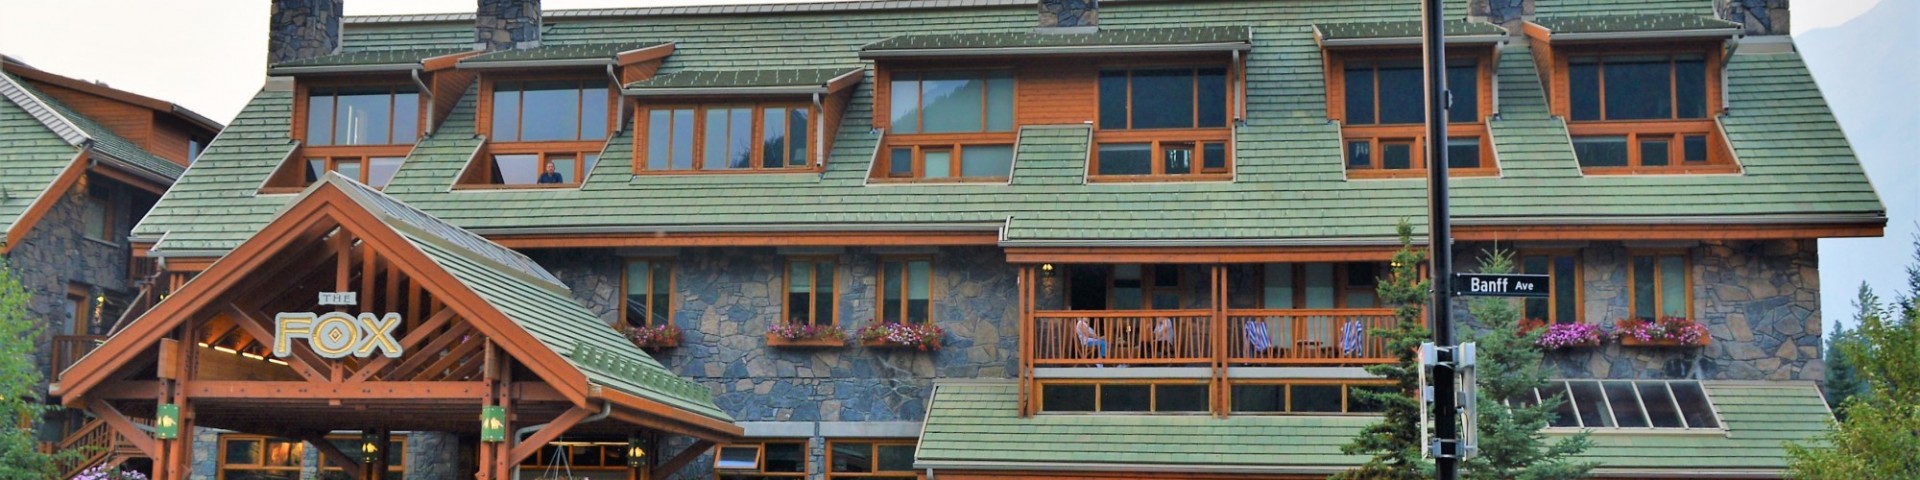 The Fox Hotel, Banff